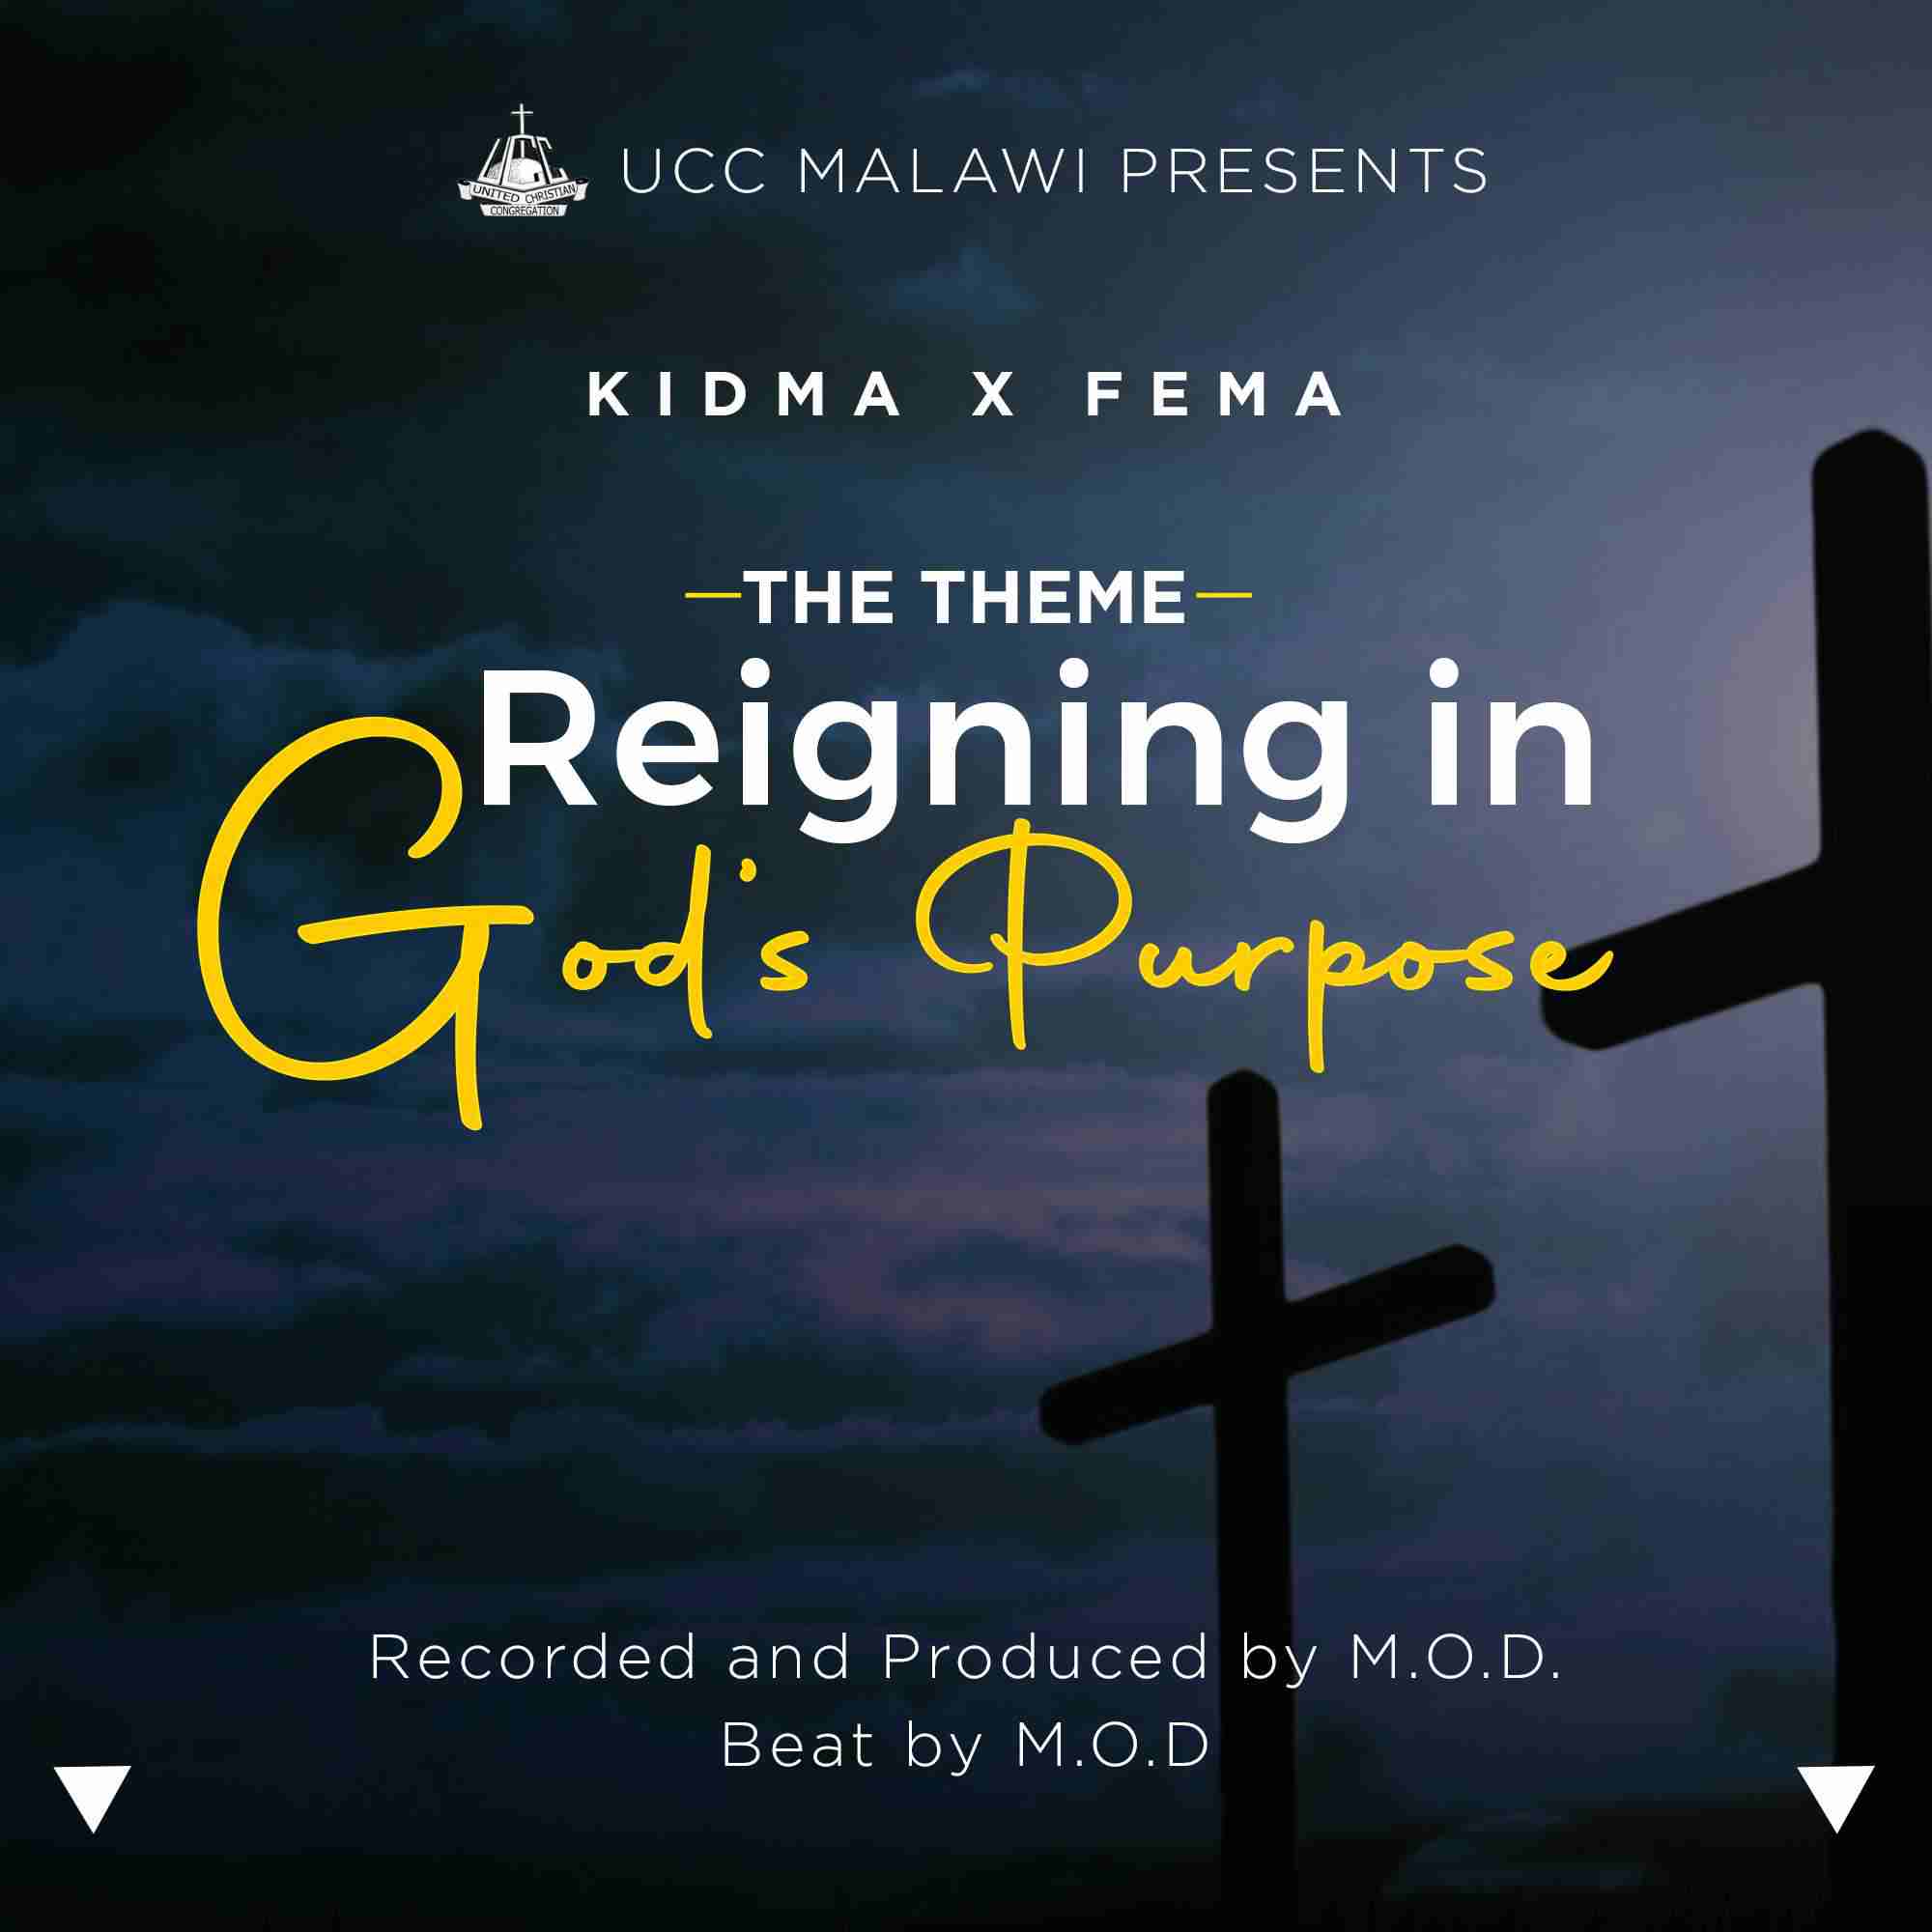 Reigning in Gods purpose